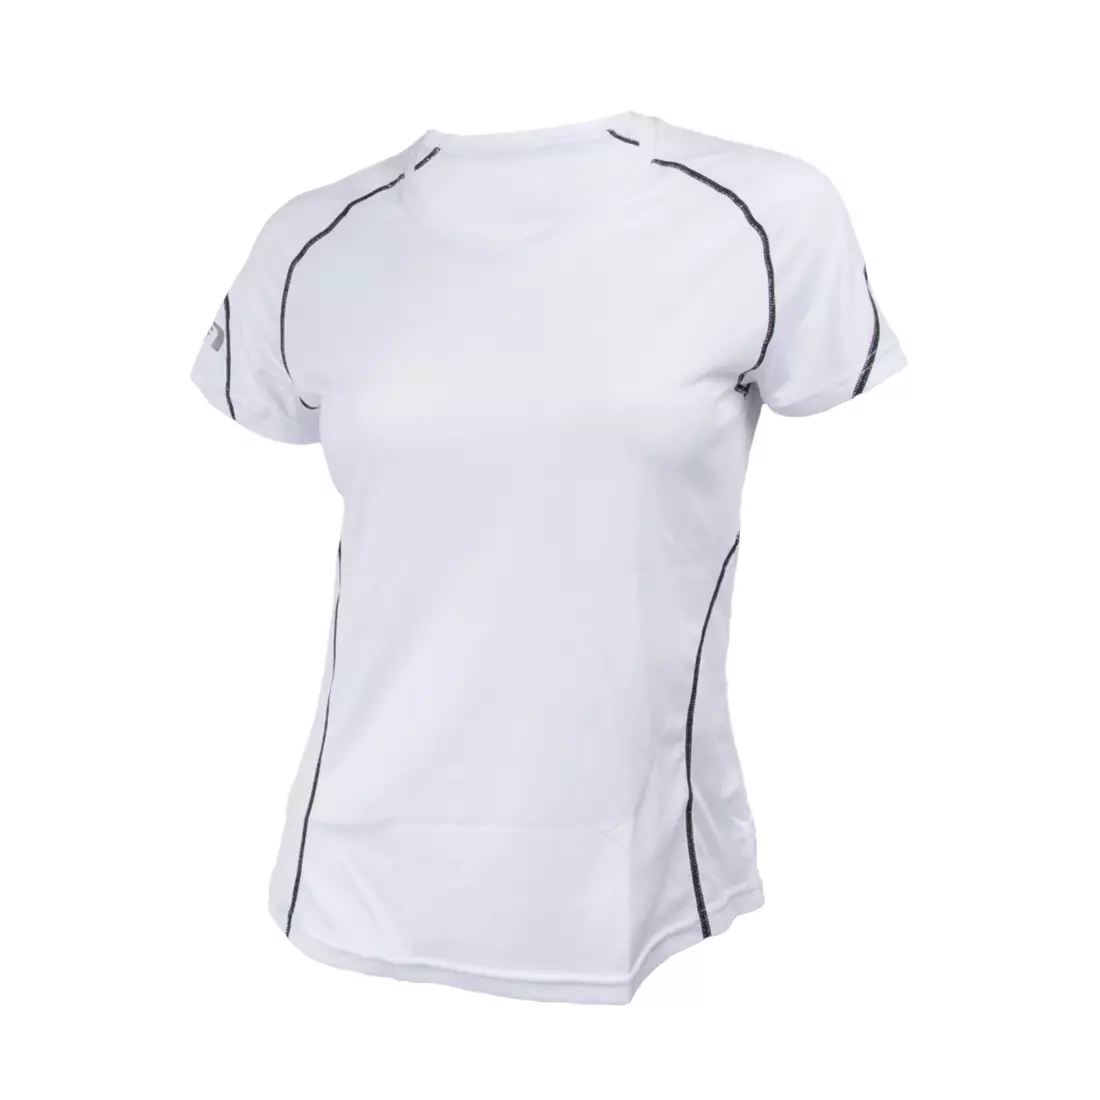 NEWLINE COOLMAX TEE - women's running T-shirt 13613-020